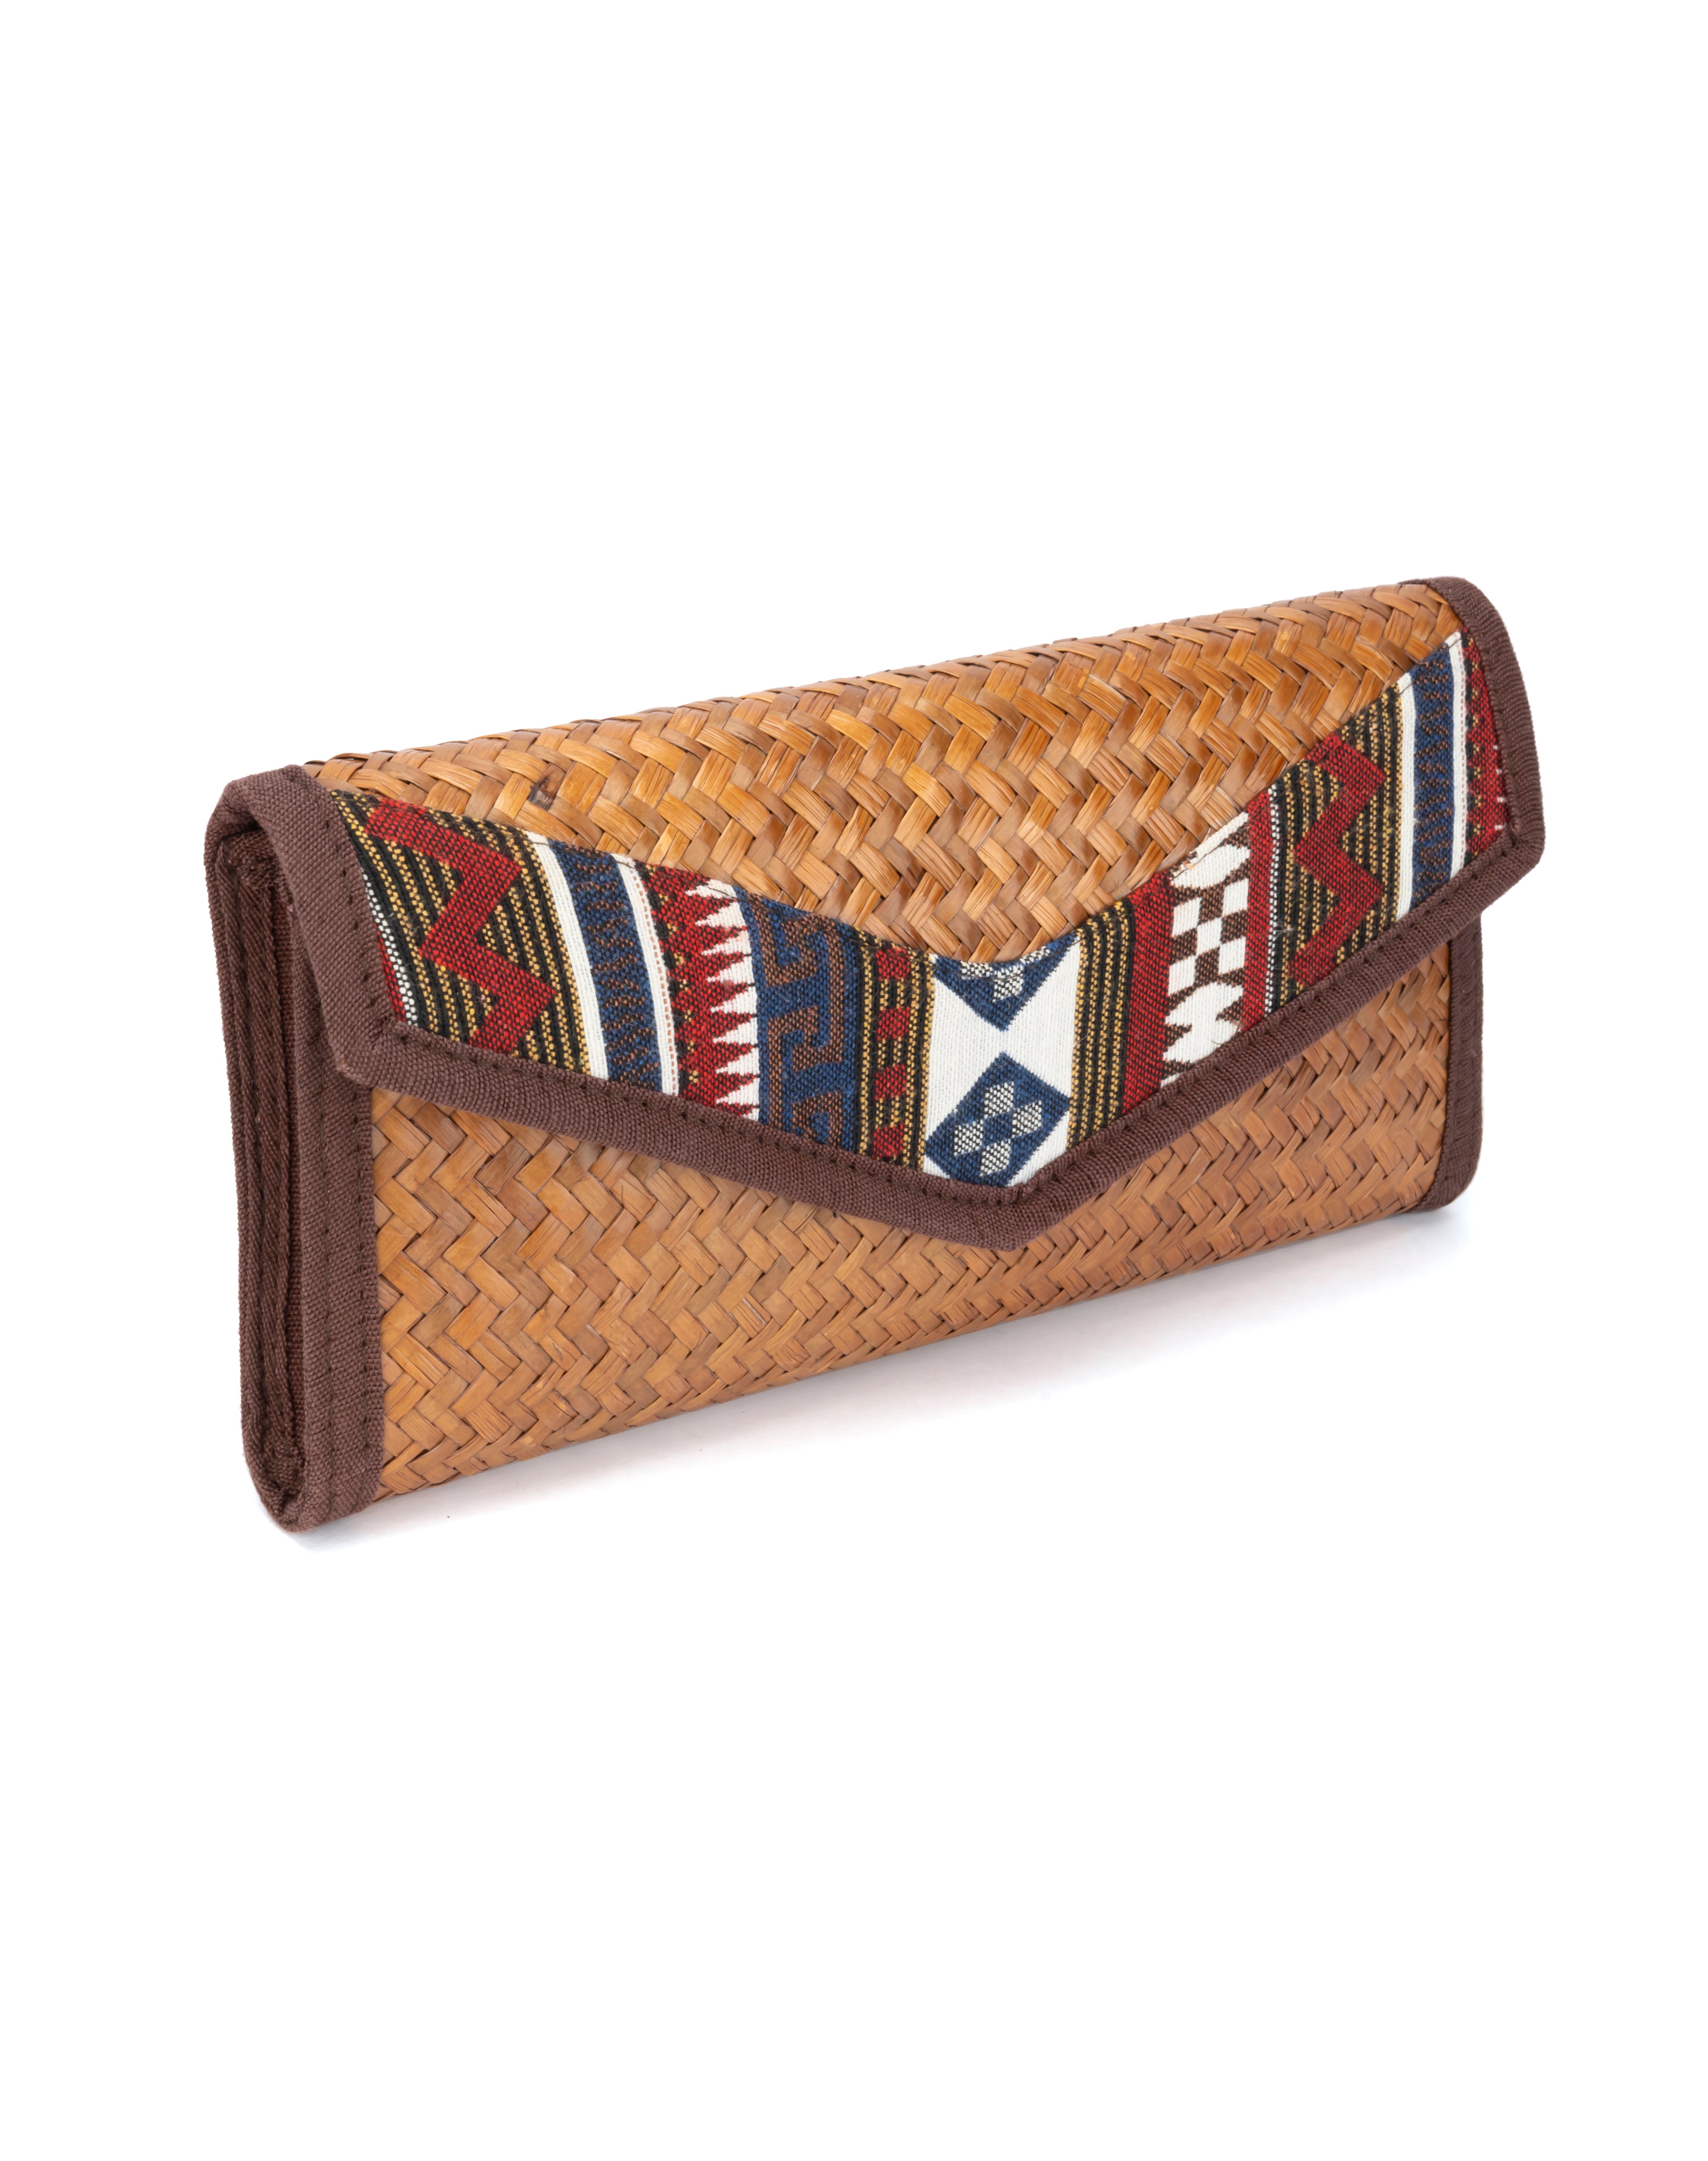 Free Crochet Bag Pattern: The Denim Envelope Bag | Crochet bag pattern  free, Crochet handbags patterns, Crochet bag pattern